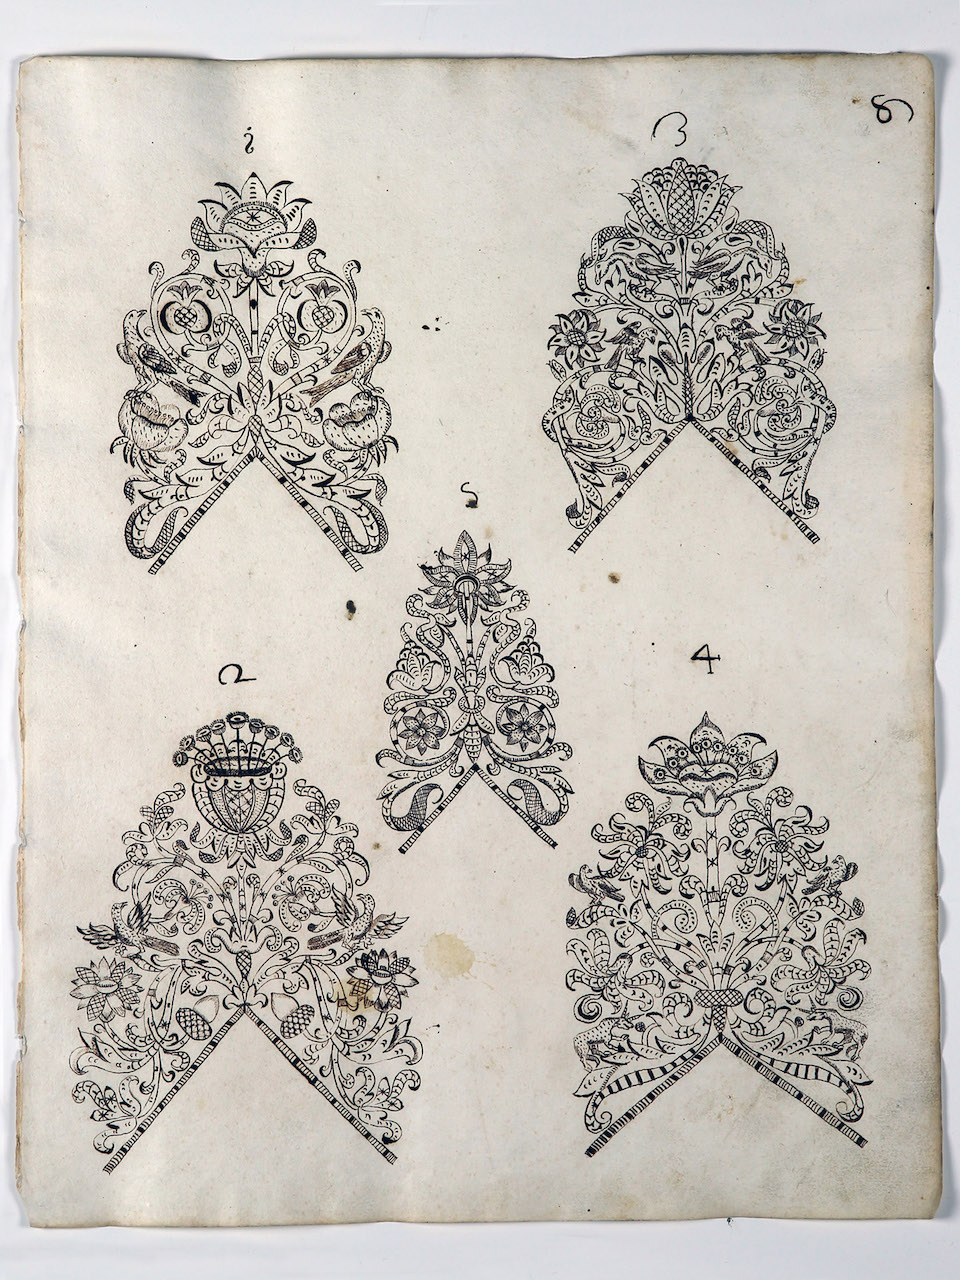 modelli per merletti (disegno) di Samarco Giovanni Alfonso (attribuito) (sec. XVII)